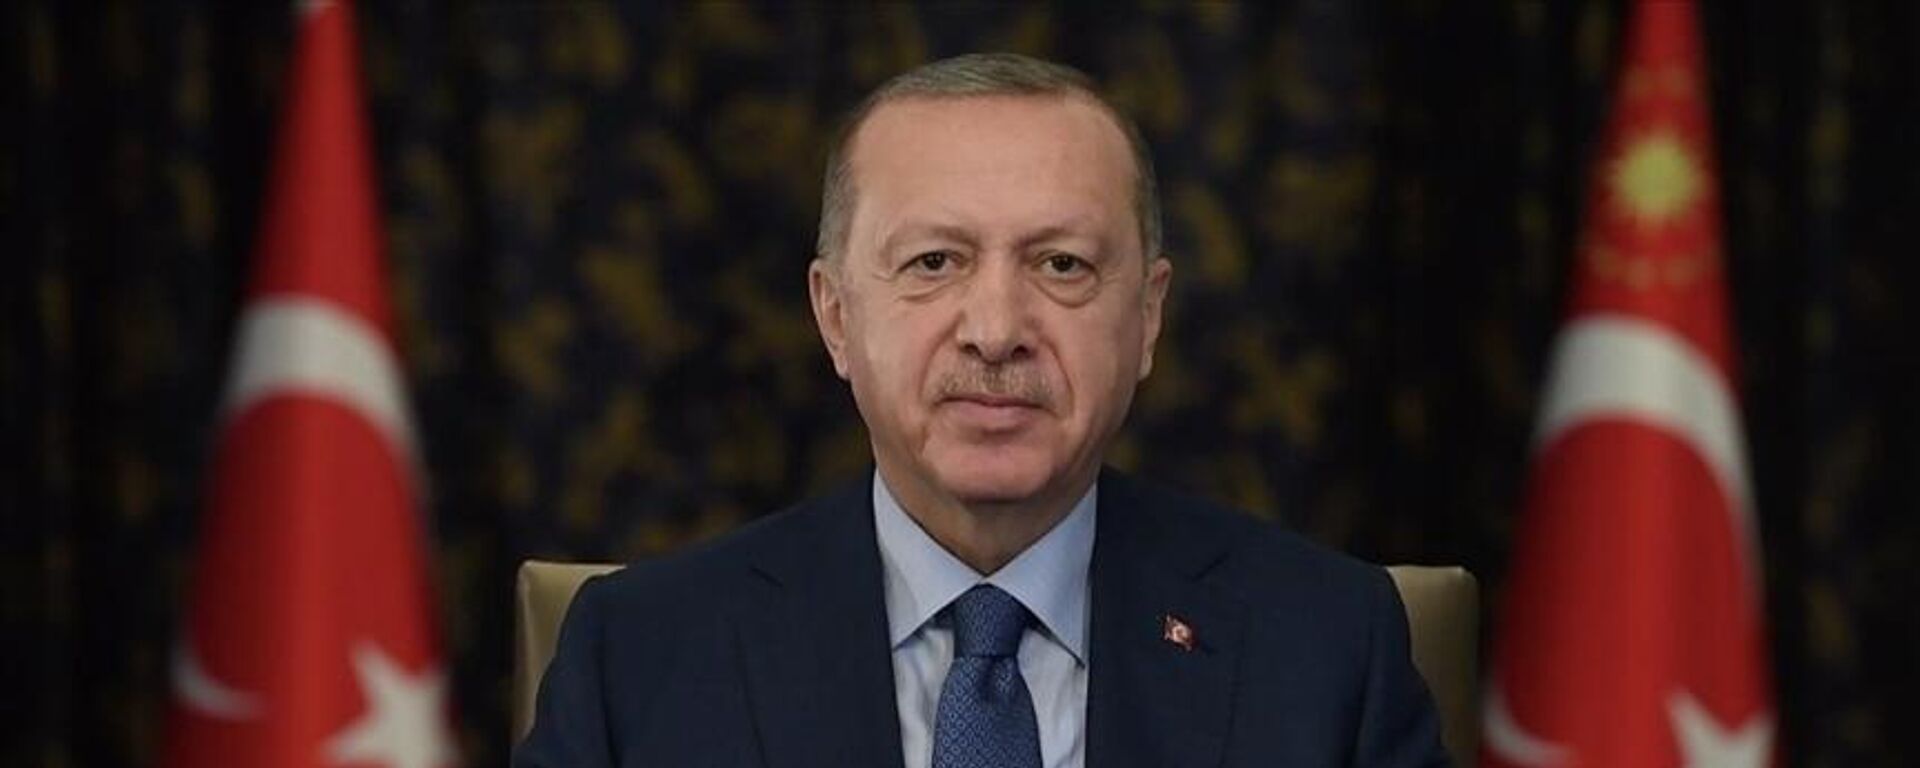 Cumhurbaşkanı Erdoğan: Uluslararası toplumun Afgan halkına sırtını dönme lüksü yoktur - Sputnik Türkiye, 1920, 12.10.2021